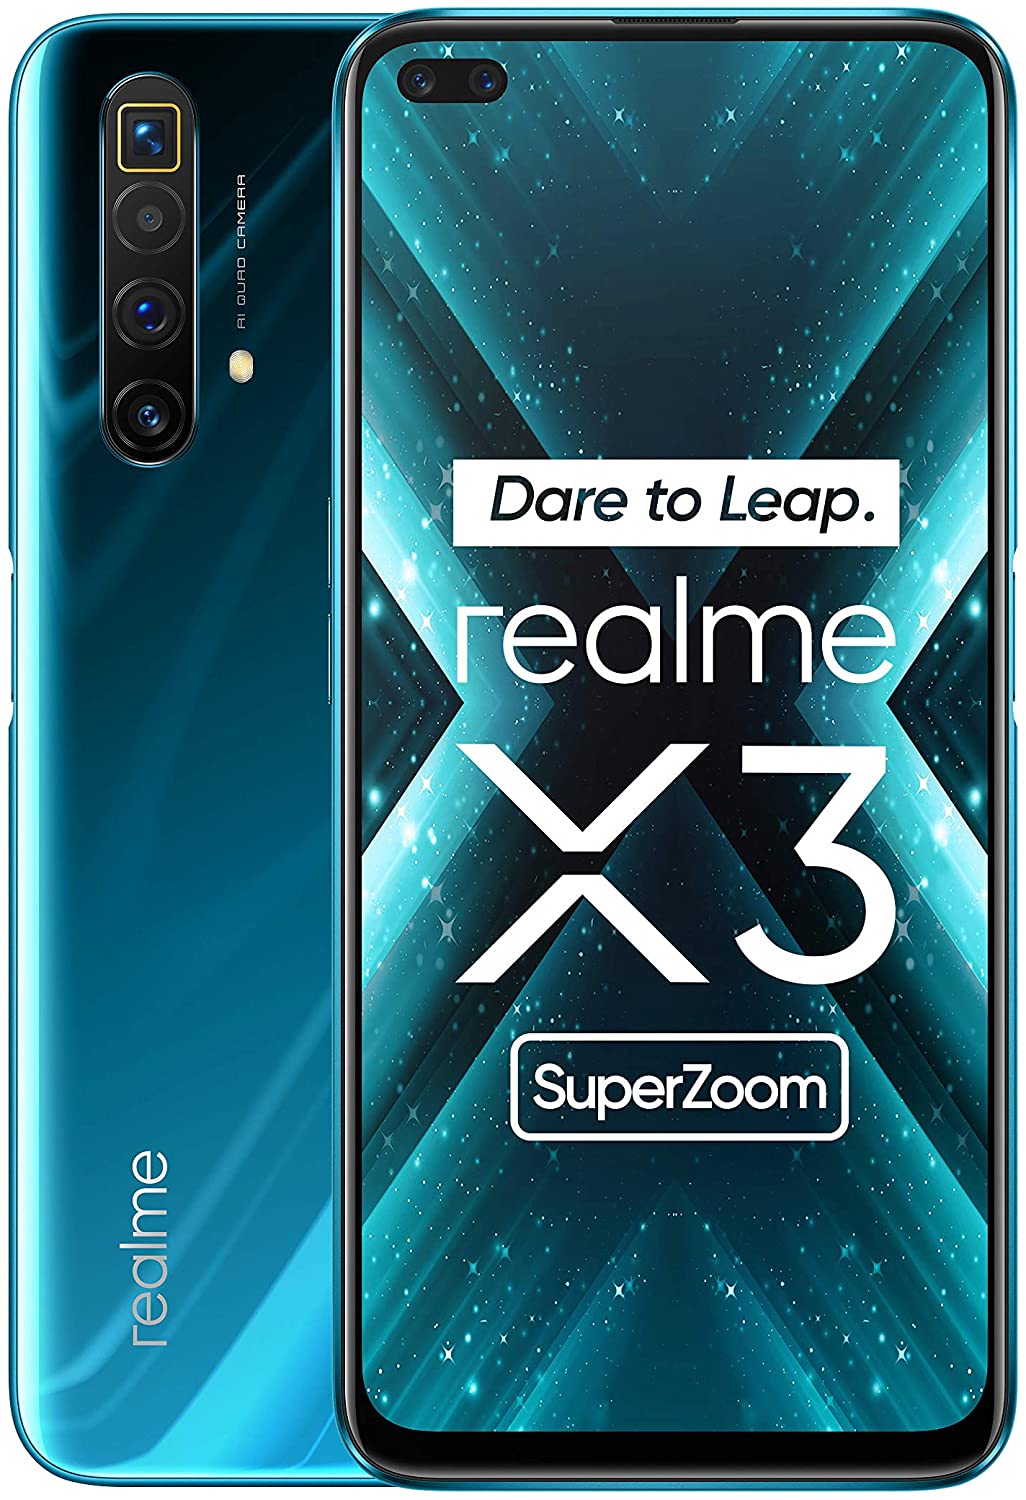 Realme X3 SuperZoom do kupienia w promocyjnej cenie